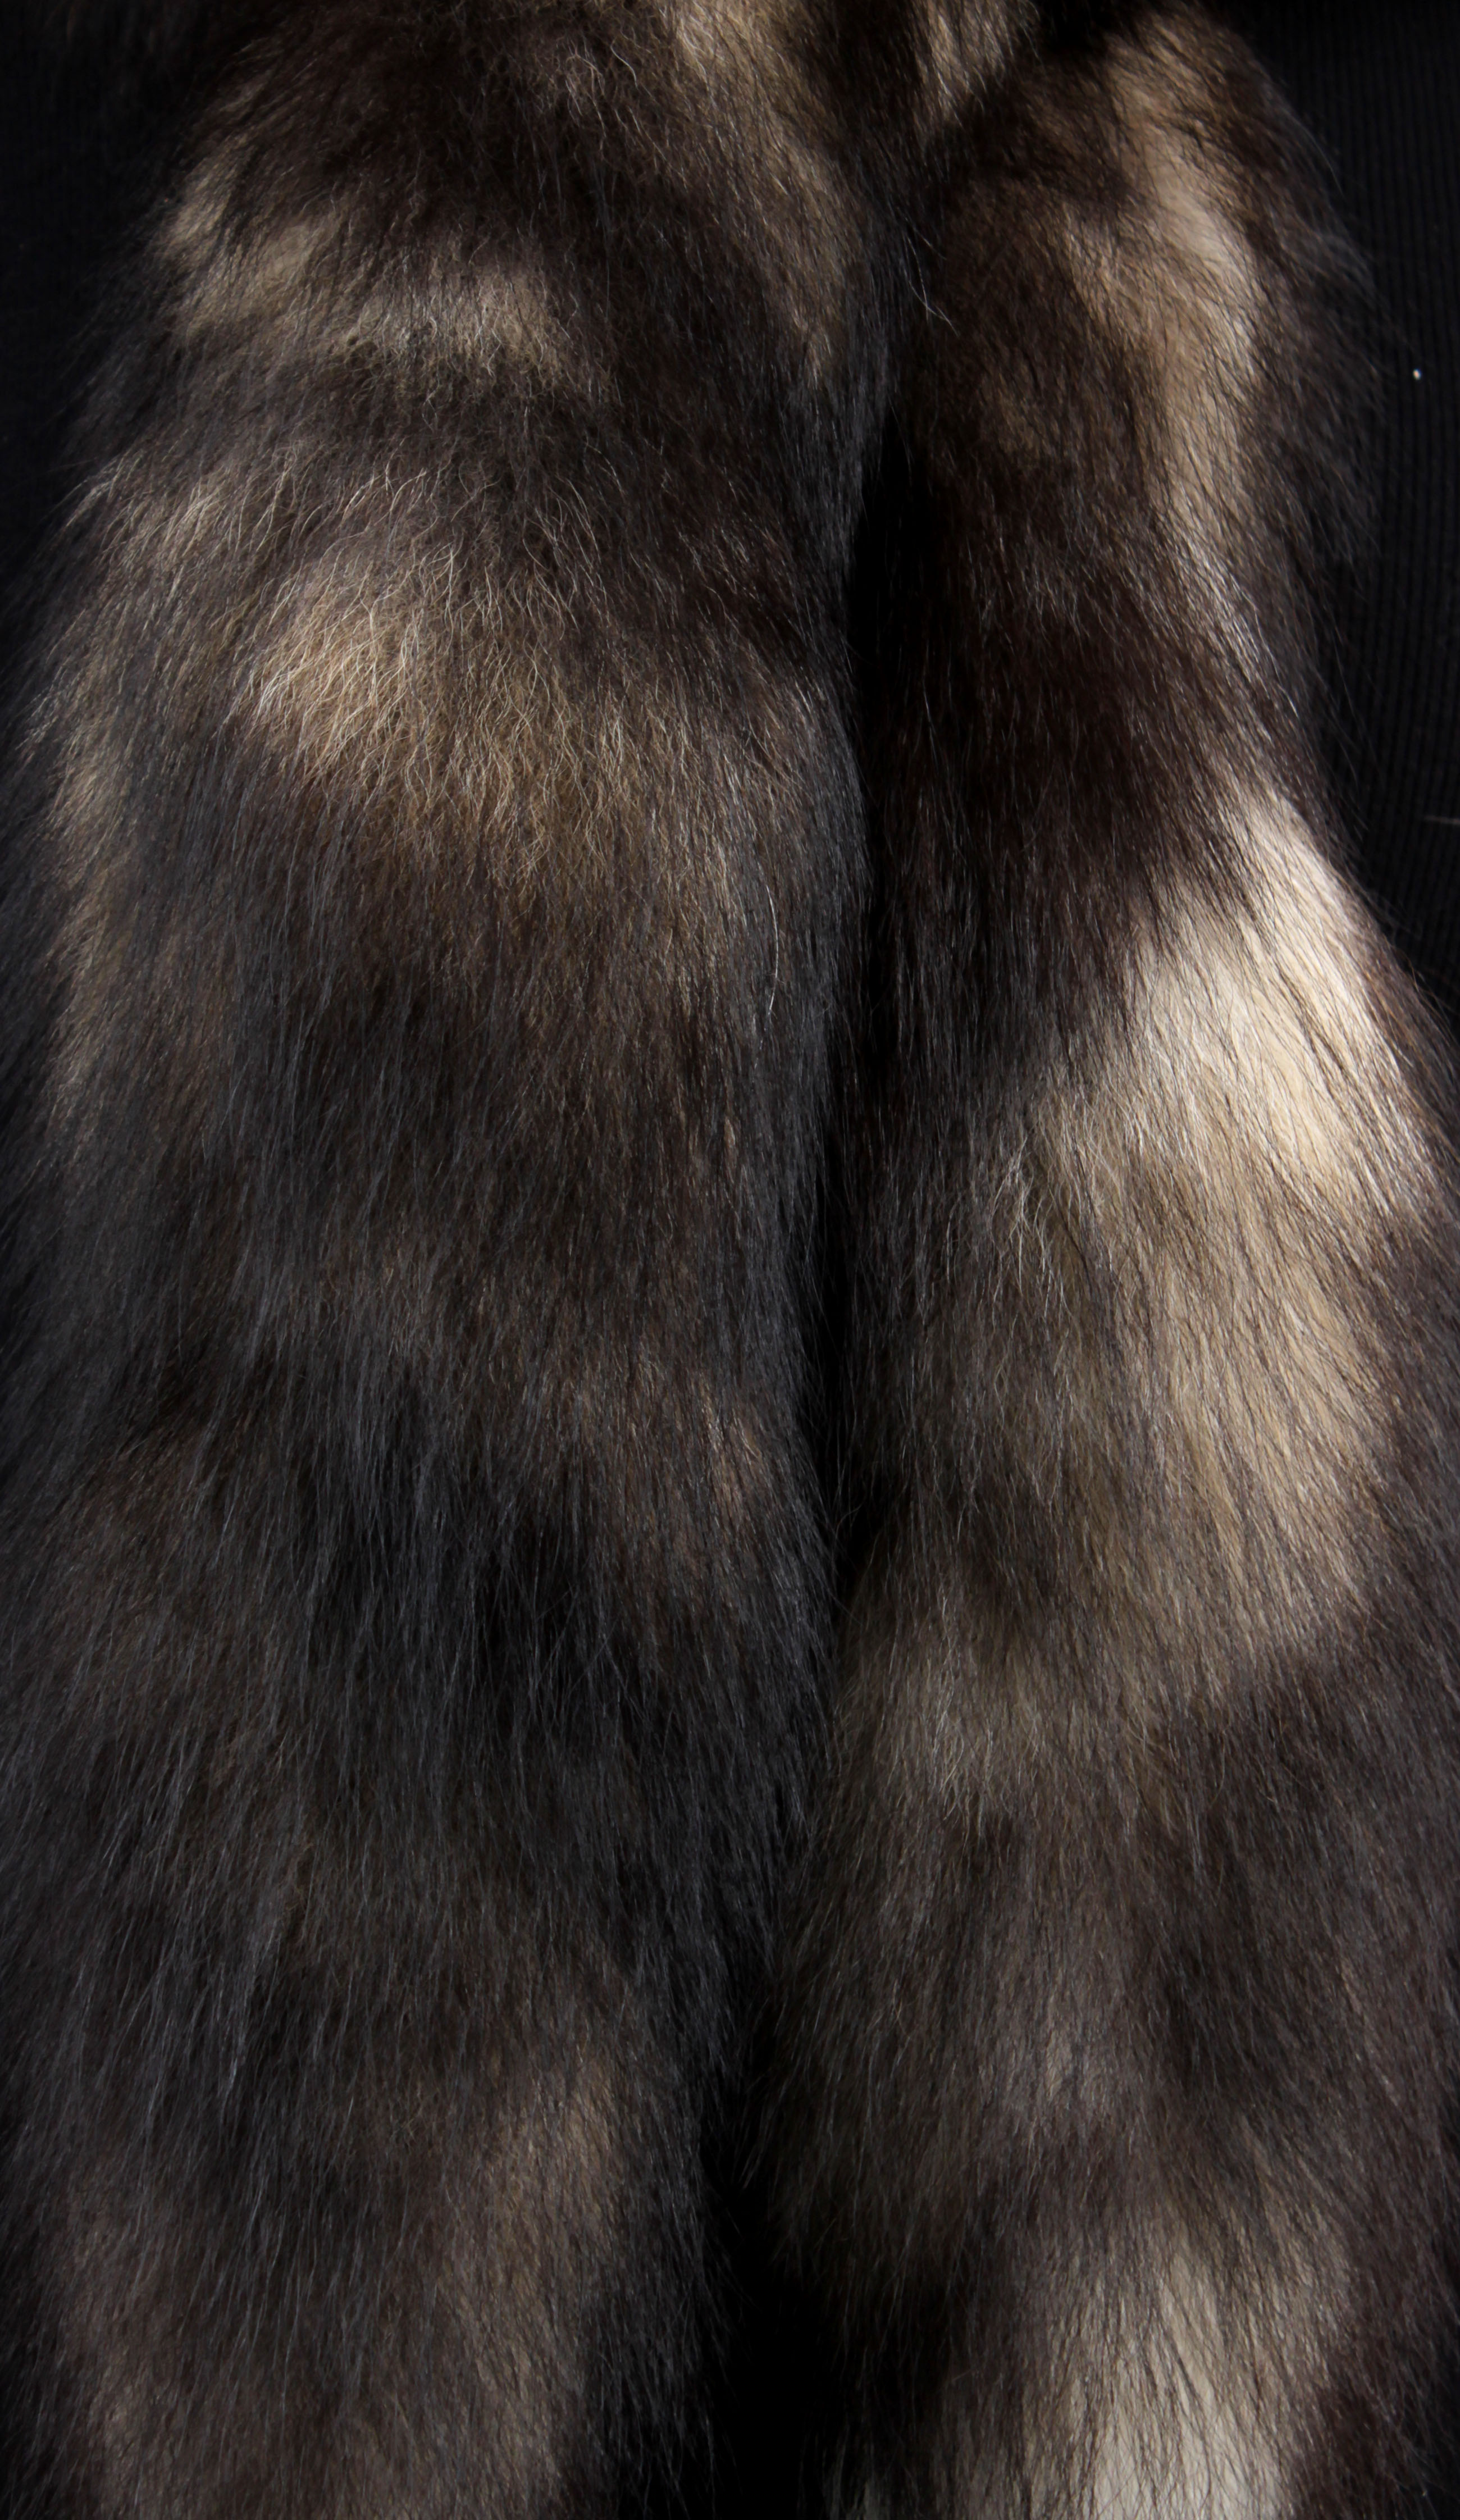 Wildcross Fuchs Schweifboa (Fur Harvesters)